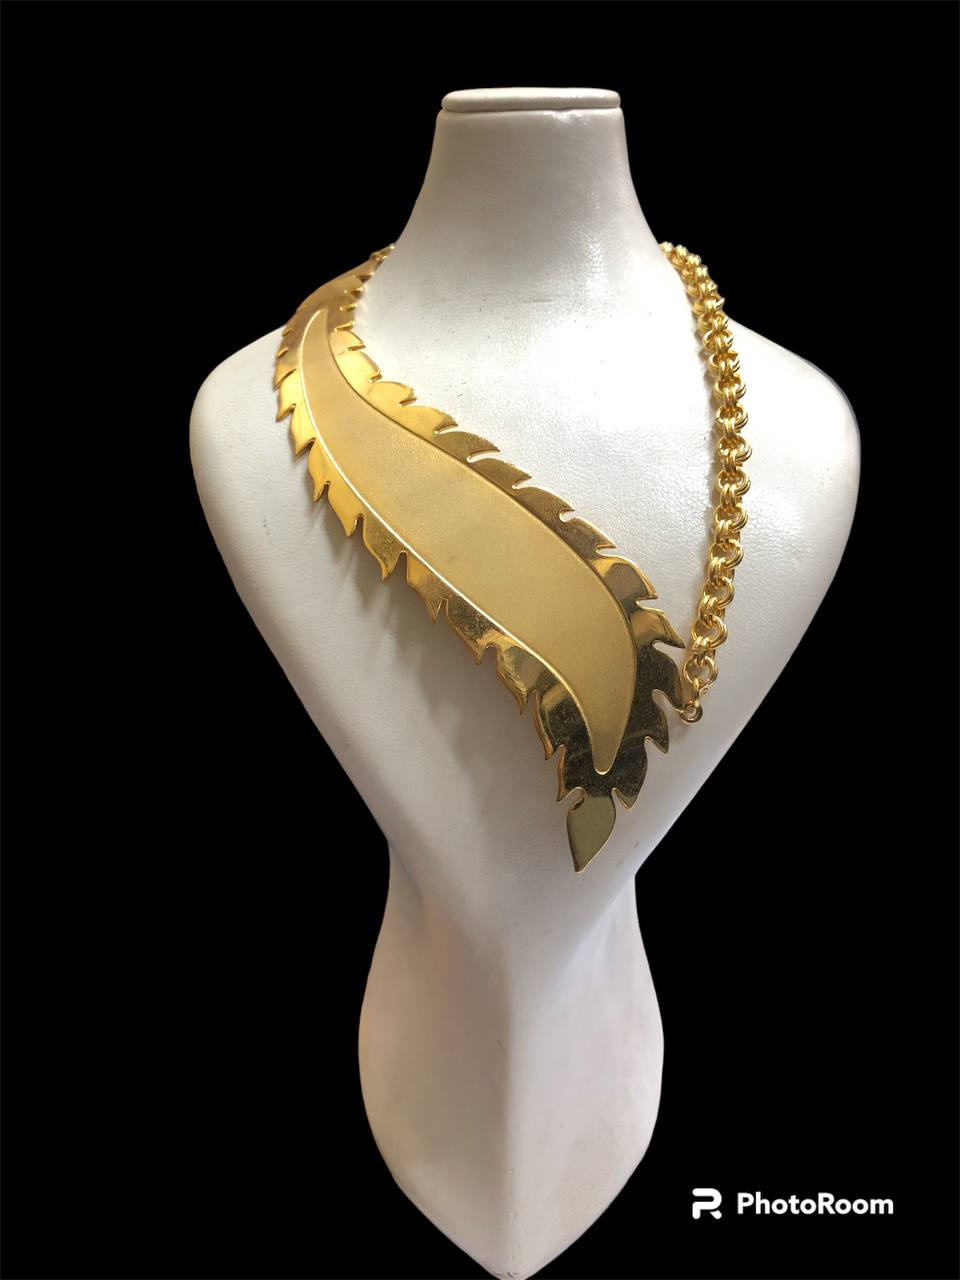 Leaf necklace